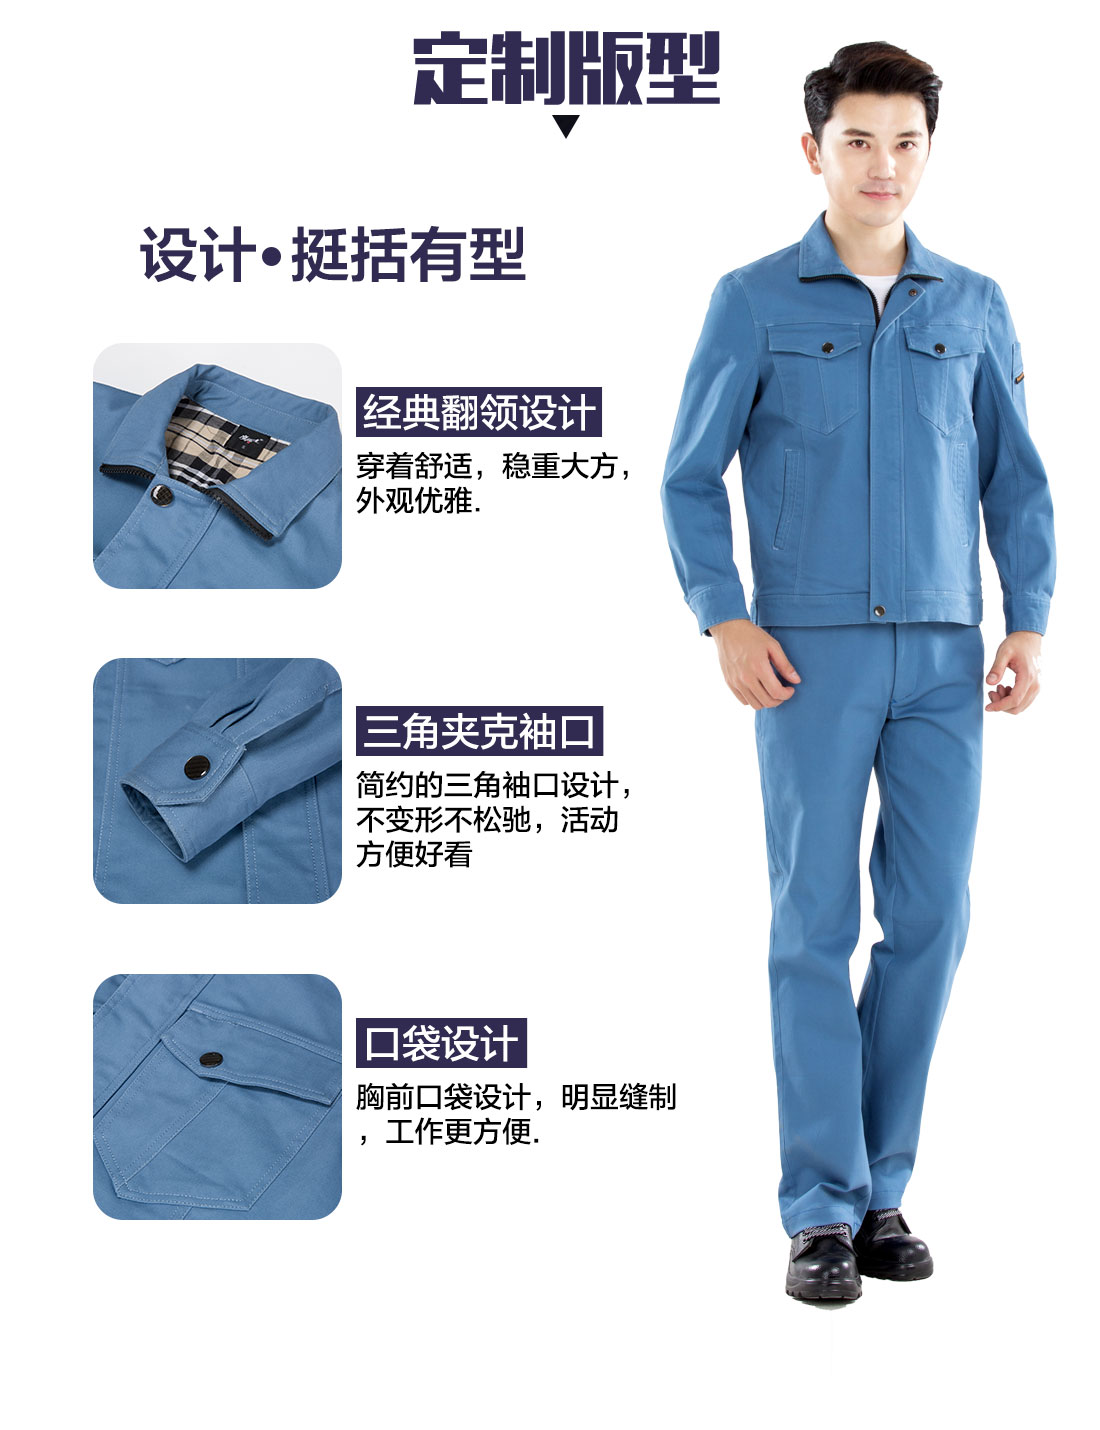 南京工作服的3D立体版型设计